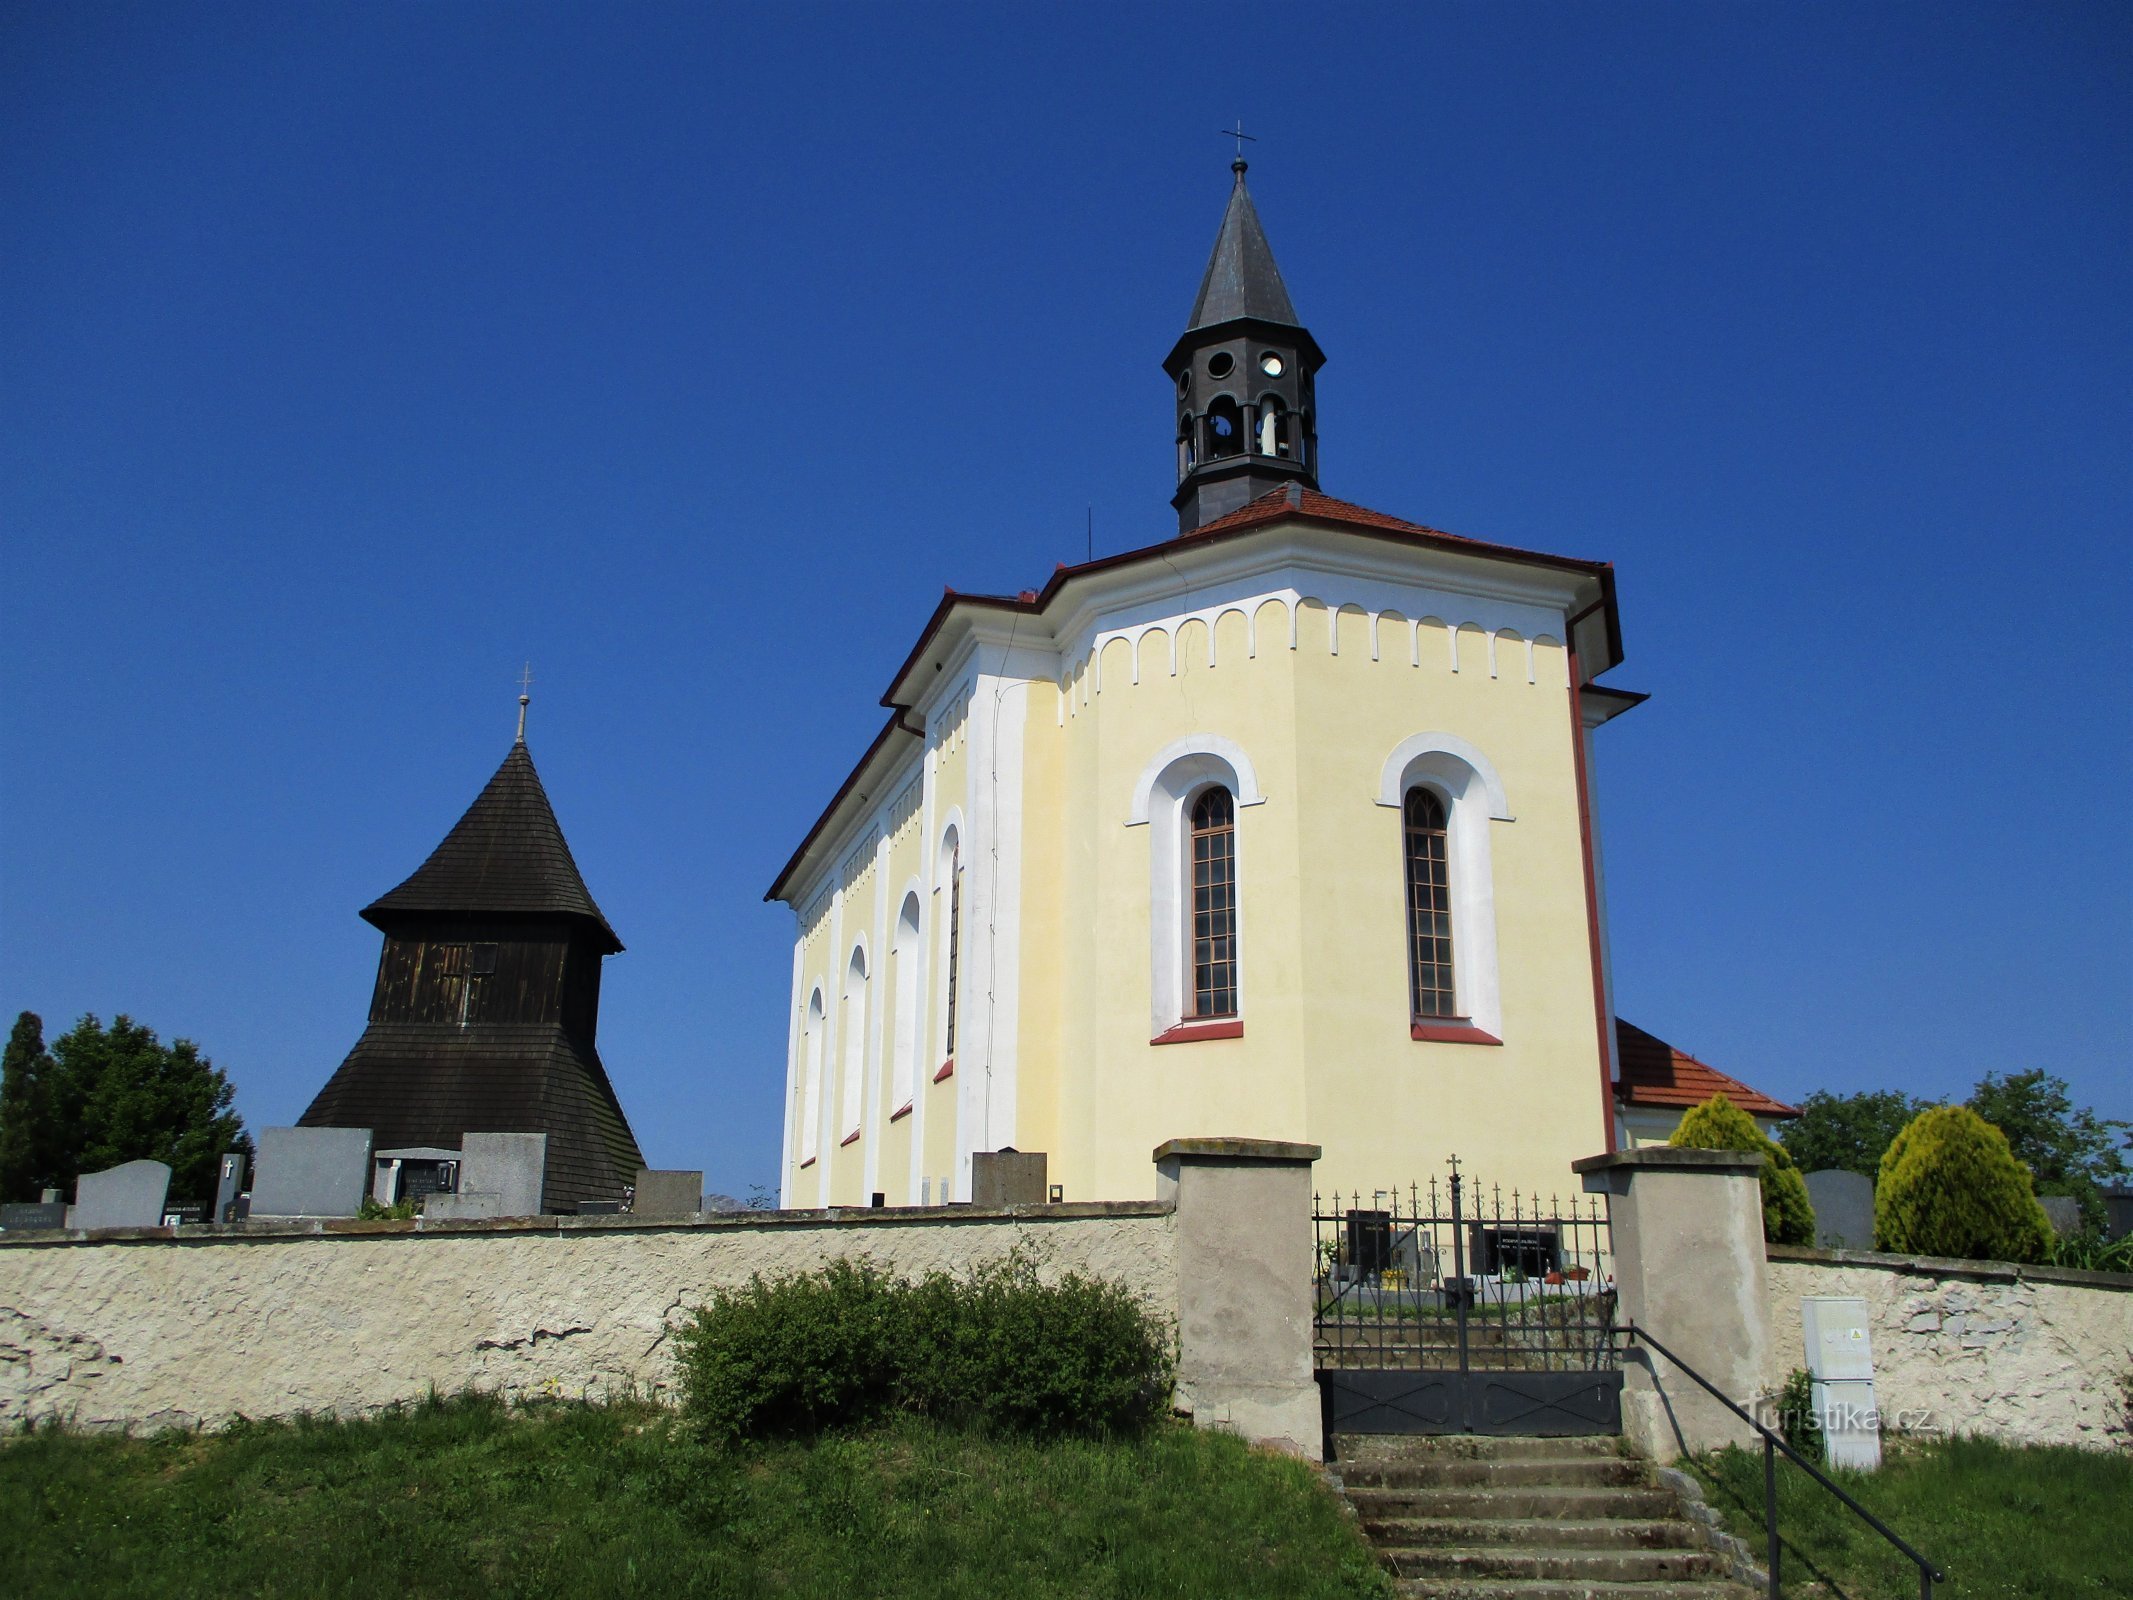 crkva sv. Vaclava sa zvonikom (Horní Ředice, 16.5.2020.)